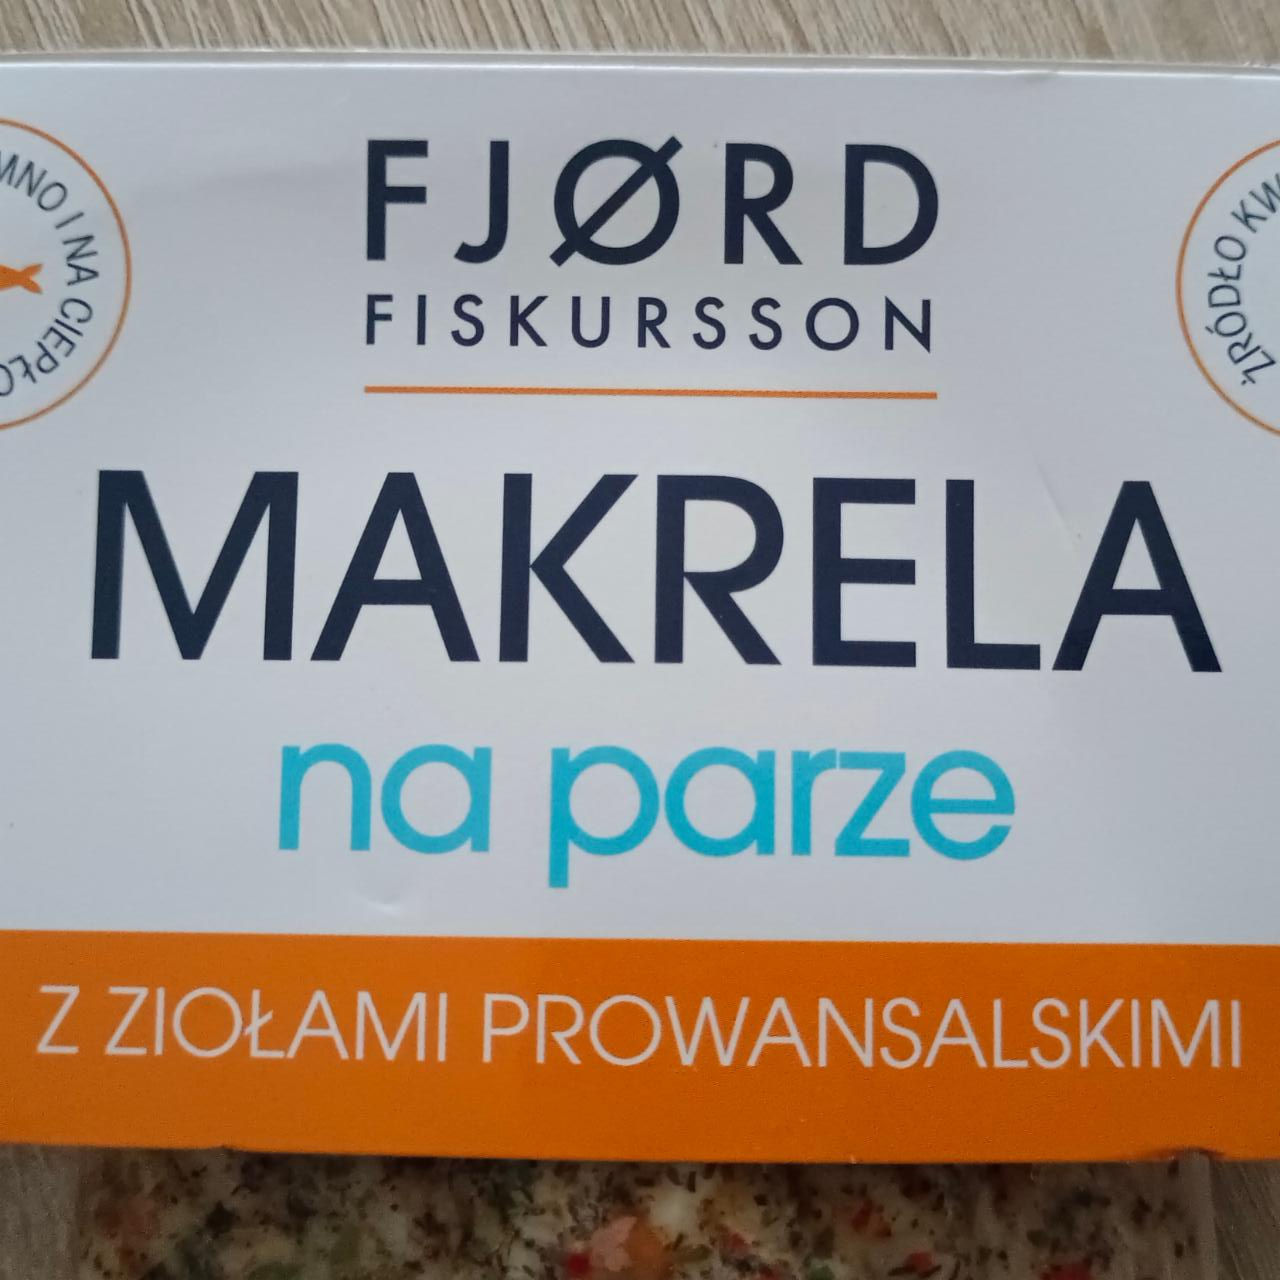 Fotografie - Makrela na parze z ziolami prowansalskimi Fjord Fiskursson